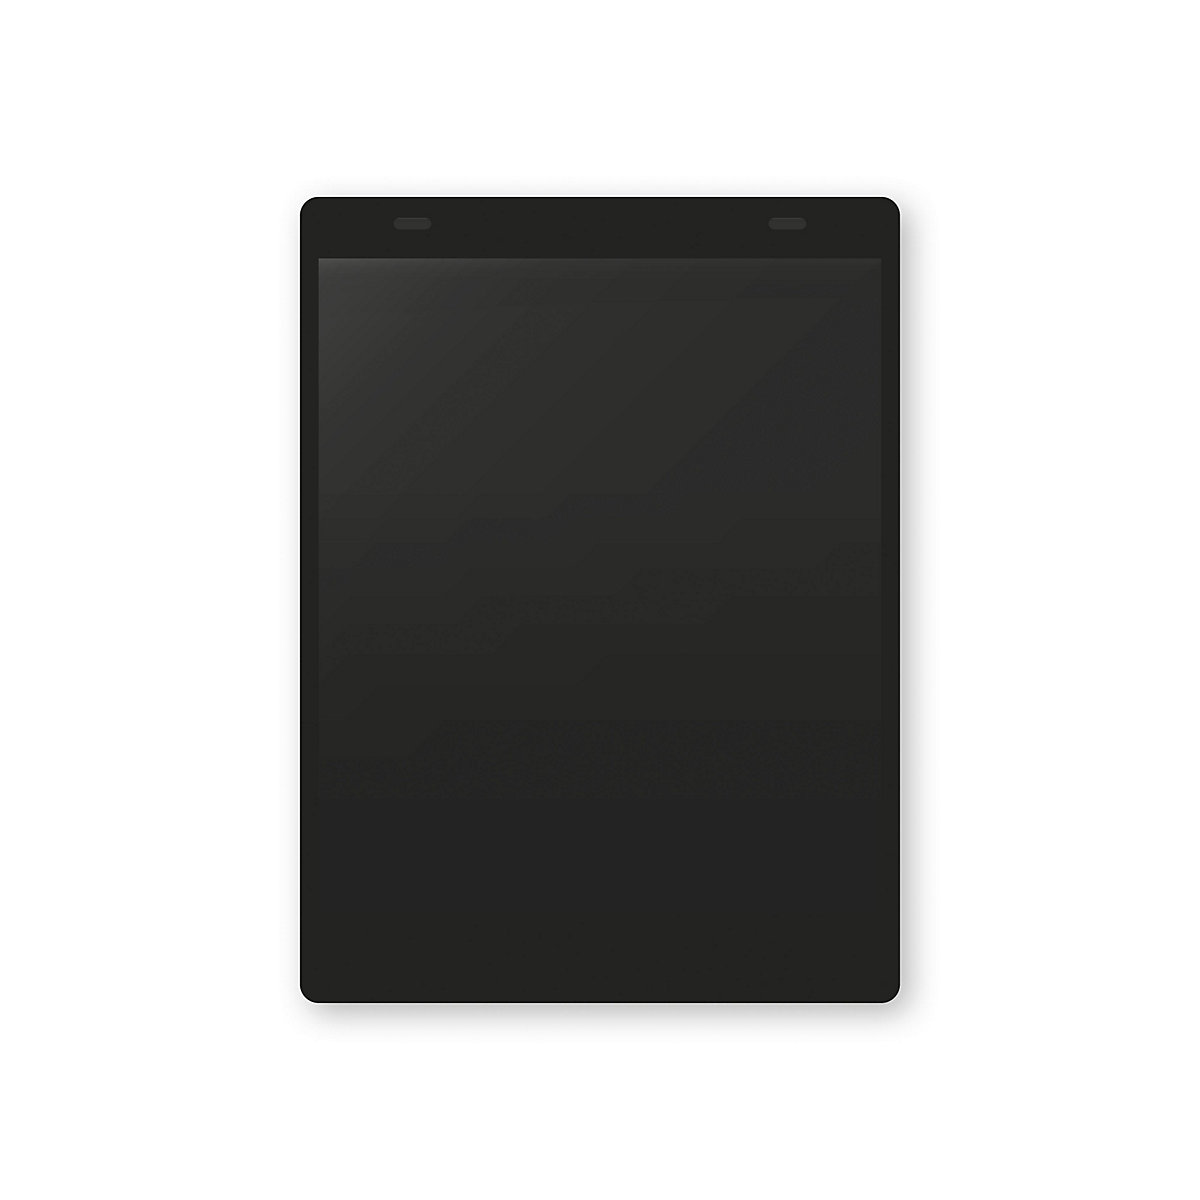 Dokumentumtartó tasakok akasztópánttal, DIN A5, álló, cs. e. 10 db, fekete